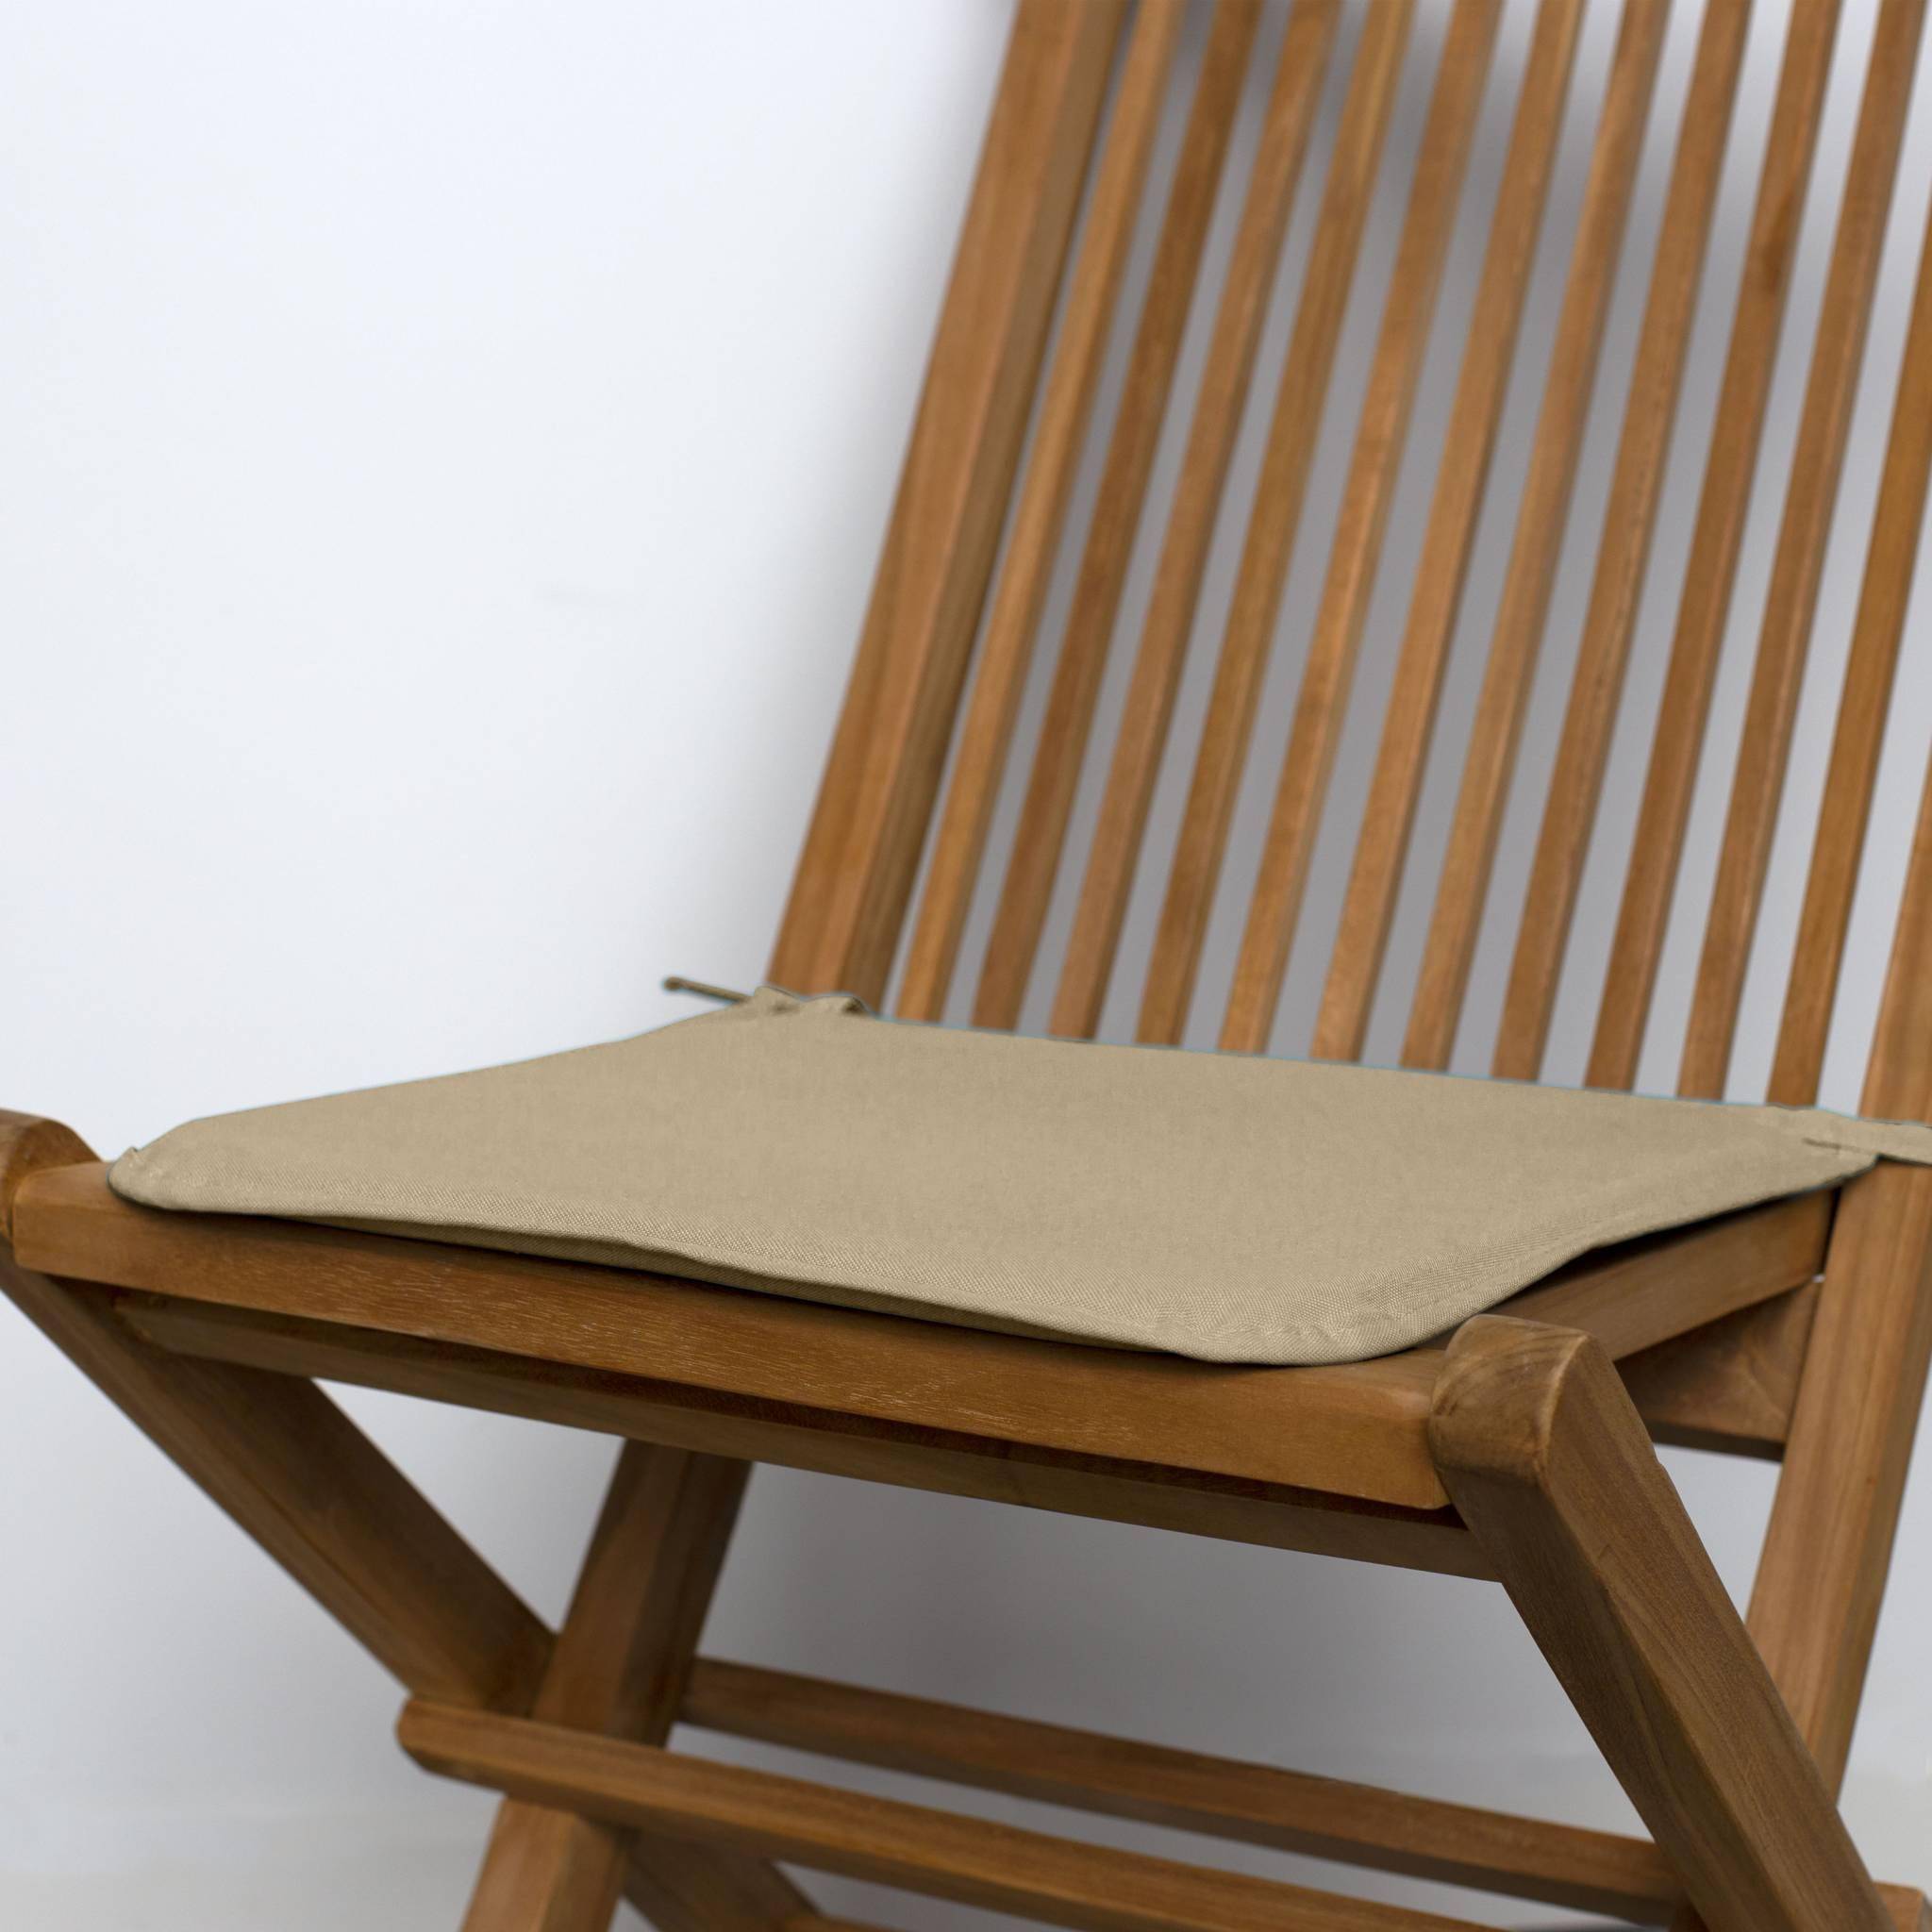 Lot de 4 galettes de chaise – 38 x 38 cm – Gris taupe, assise avec fixation à nœuds, bords gansés Photo2